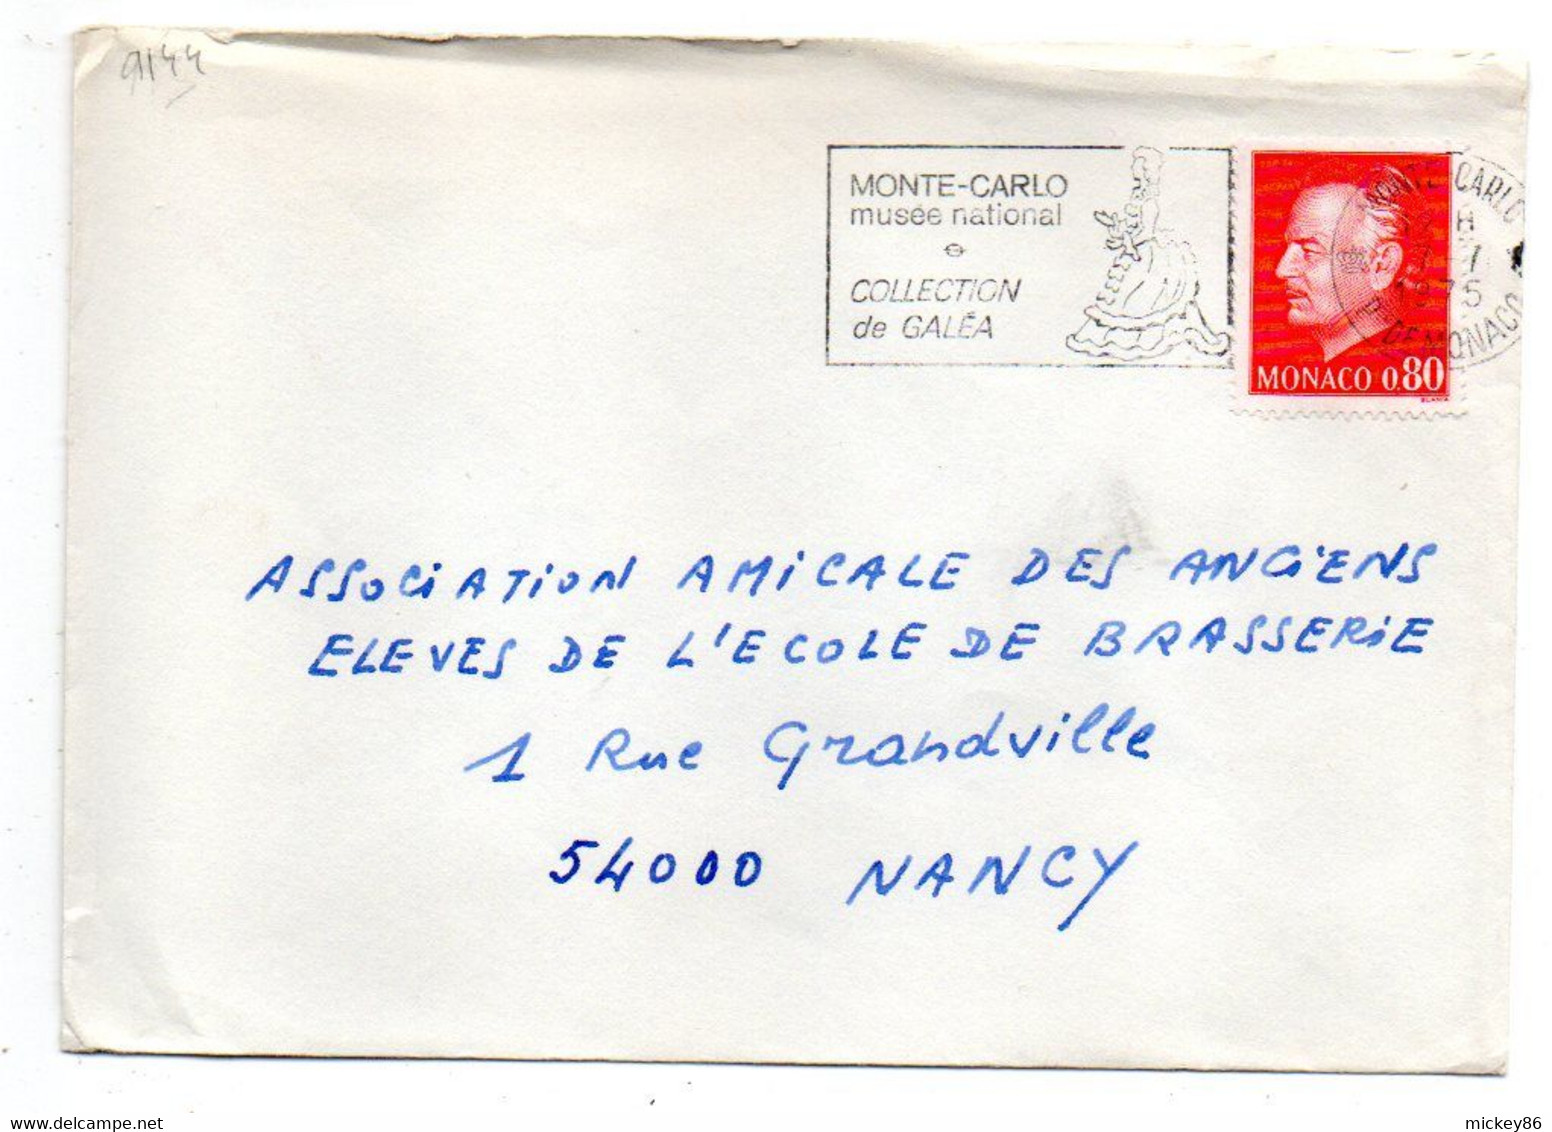 Monaco -1975- Lettre De Monte-Carlo Pour NANCY (France)....tp...cachet  Musée National Et Collec Galéa - Lettres & Documents